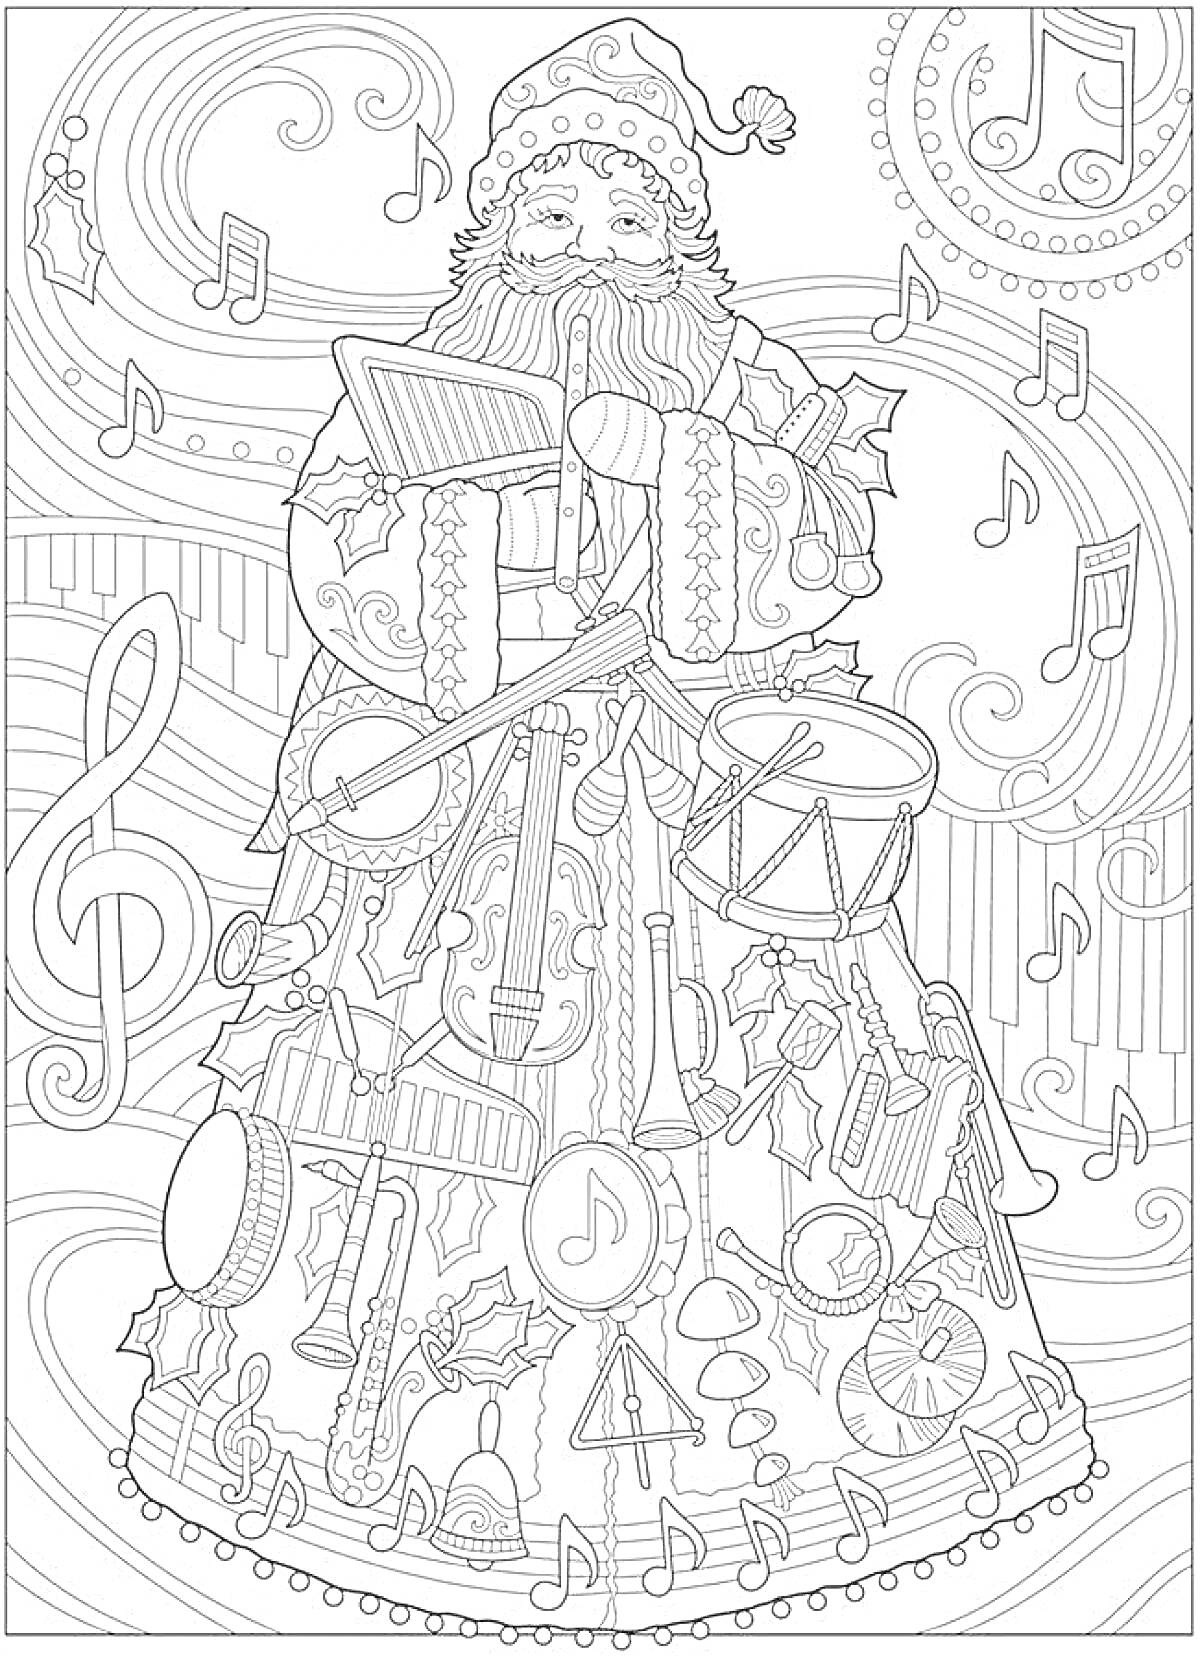 Раскраска Дед Мороз с барабаном, украшенный музыкальными инструментами на фоне нот и музыкальных символов.